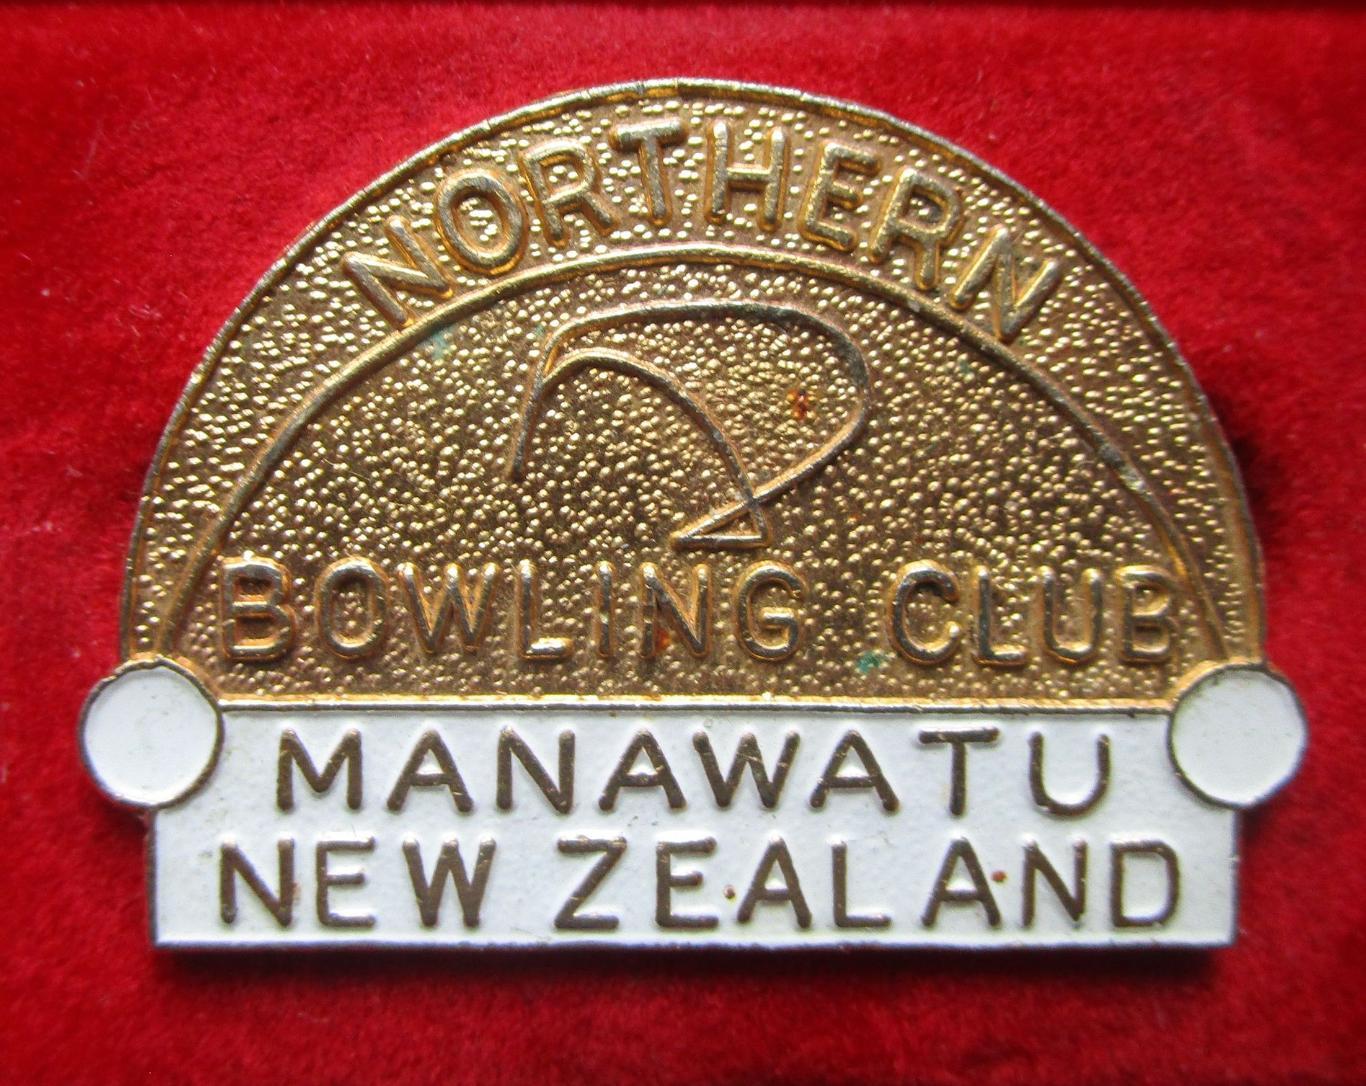 Спорт Боулинг. Старые боулинг клубы Новой Зеландии ( Manawatu Bowling Club )